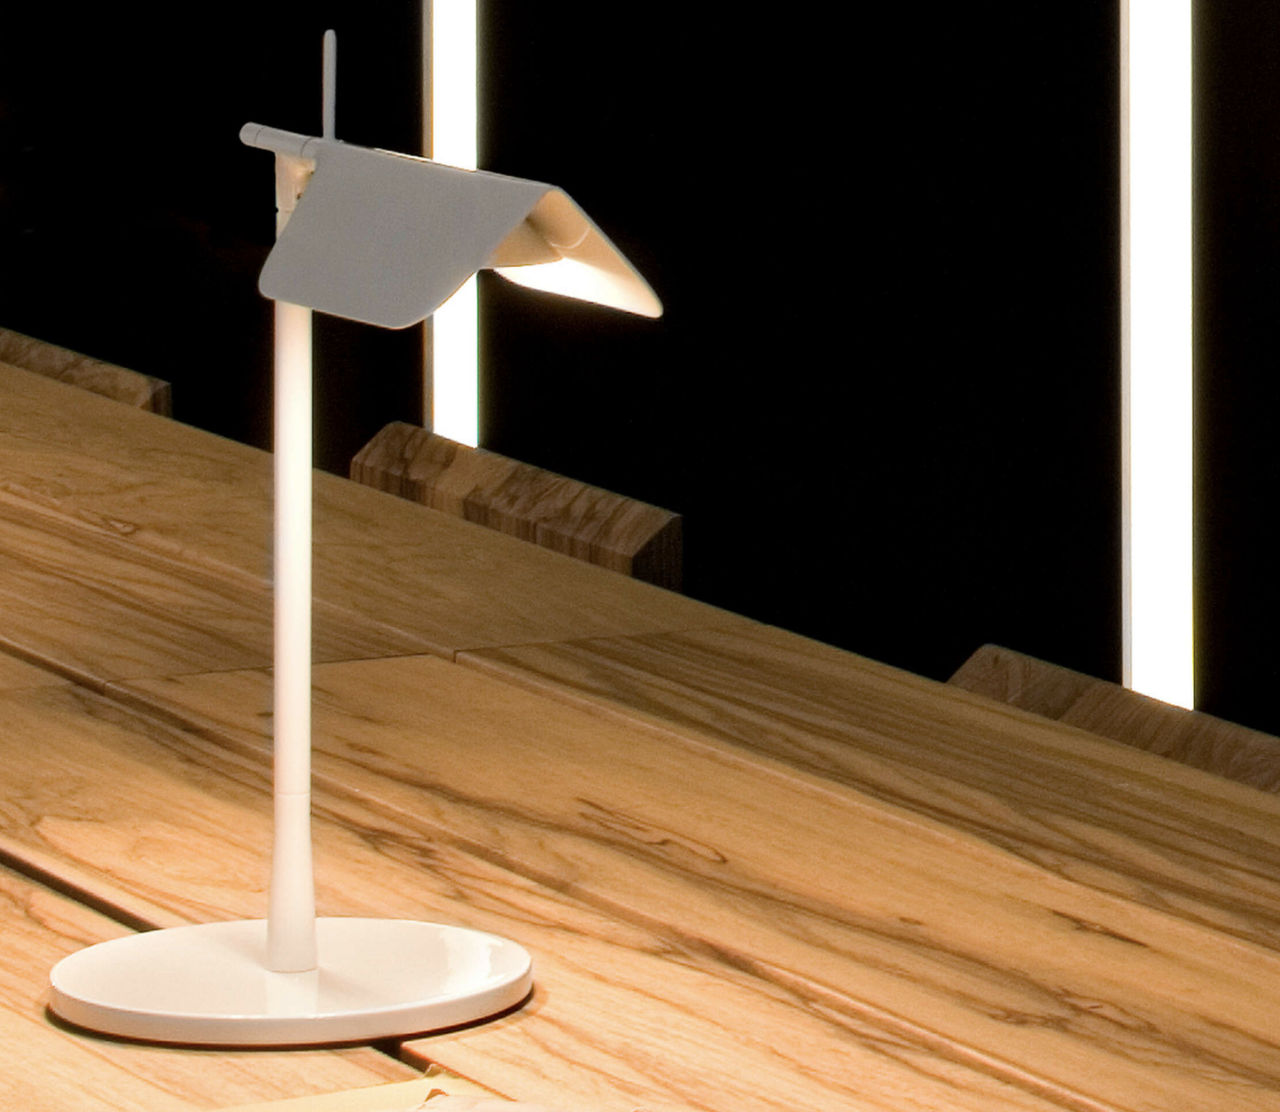 Tab Table è una lampada da tavolo prodotta da Flos, progettato da Edward Barber and Jay Osgerby e proposto da Peverelli